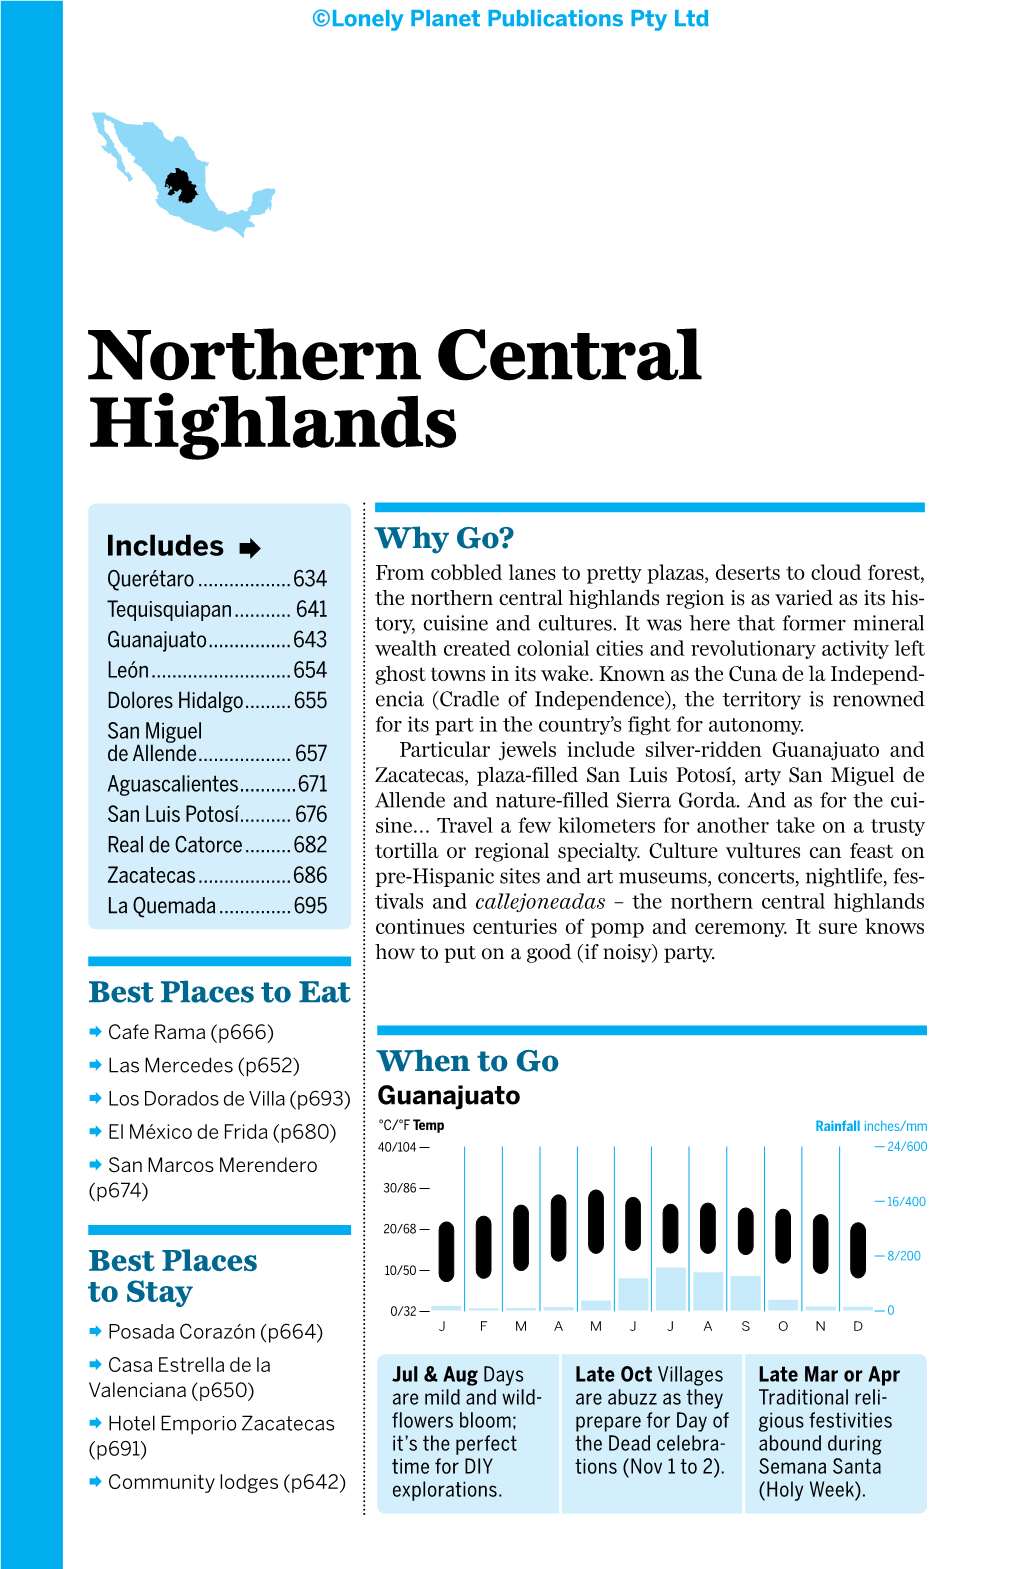 Northern Central Highlands